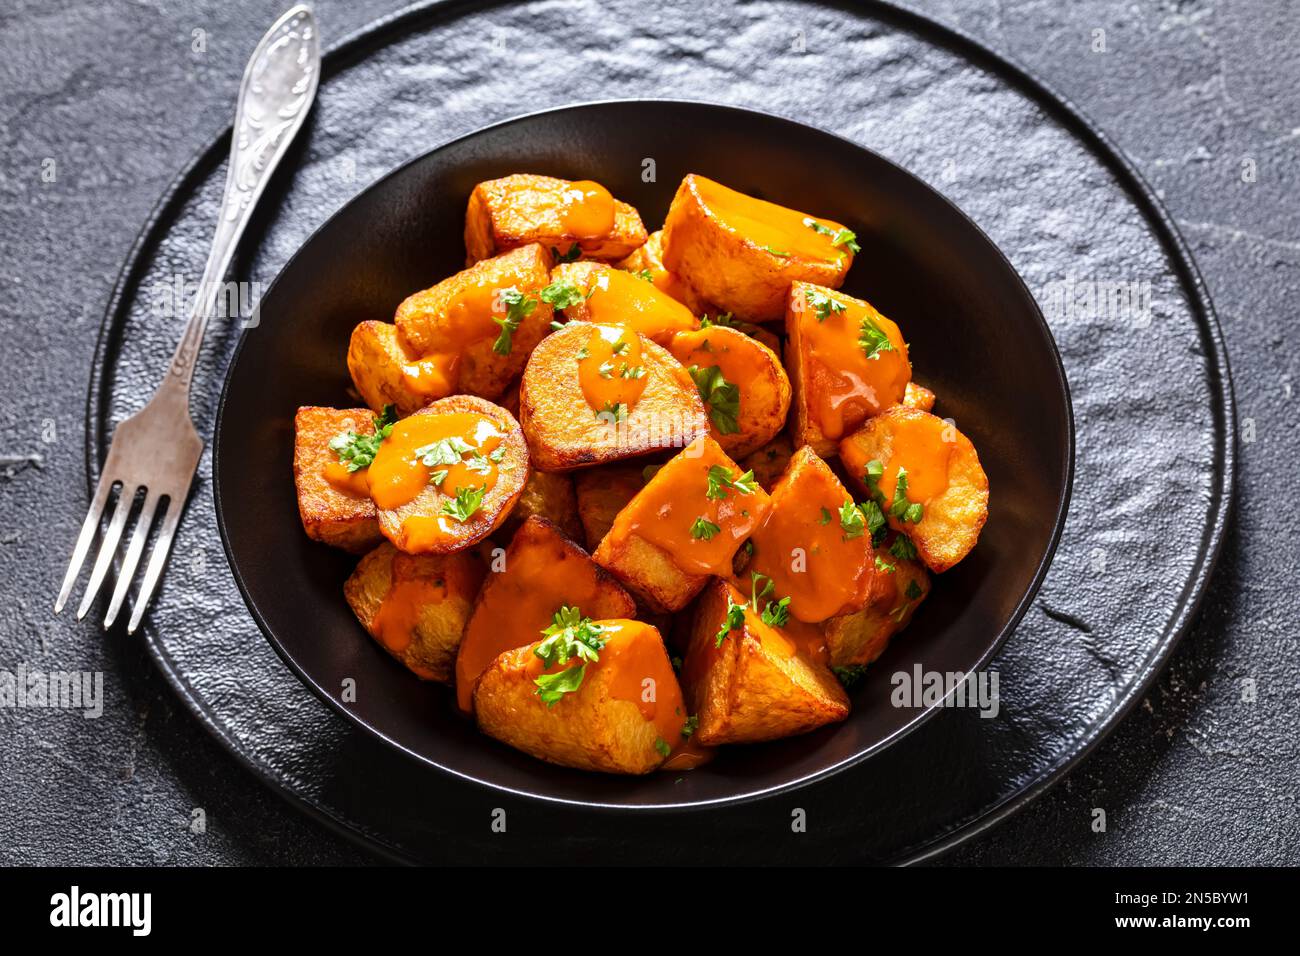 Patatas bravas, frittierte Kartoffeln mit scharfer Sauce in schwarzer Schüssel auf Betontisch, spanische Küche Stockfoto